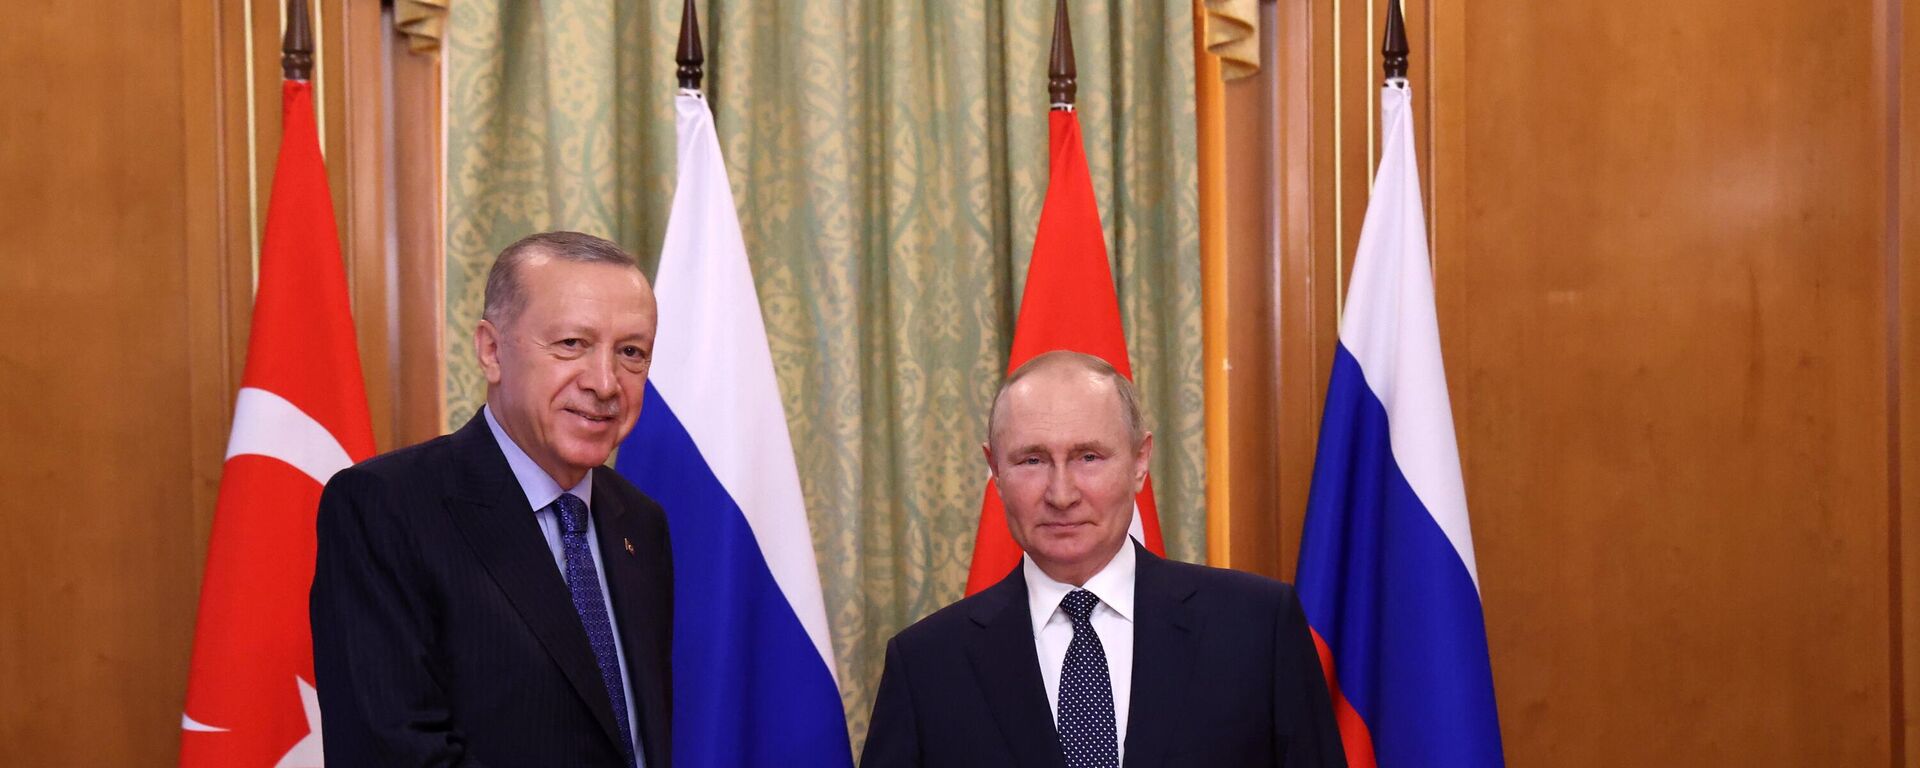 Tổng thống Nga Vladimir Putin và Tổng thống Thổ Nhĩ Kỳ Recep Tayyip Erdogan trong cuộc gặp ở Sochi - Sputnik Việt Nam, 1920, 06.08.2022